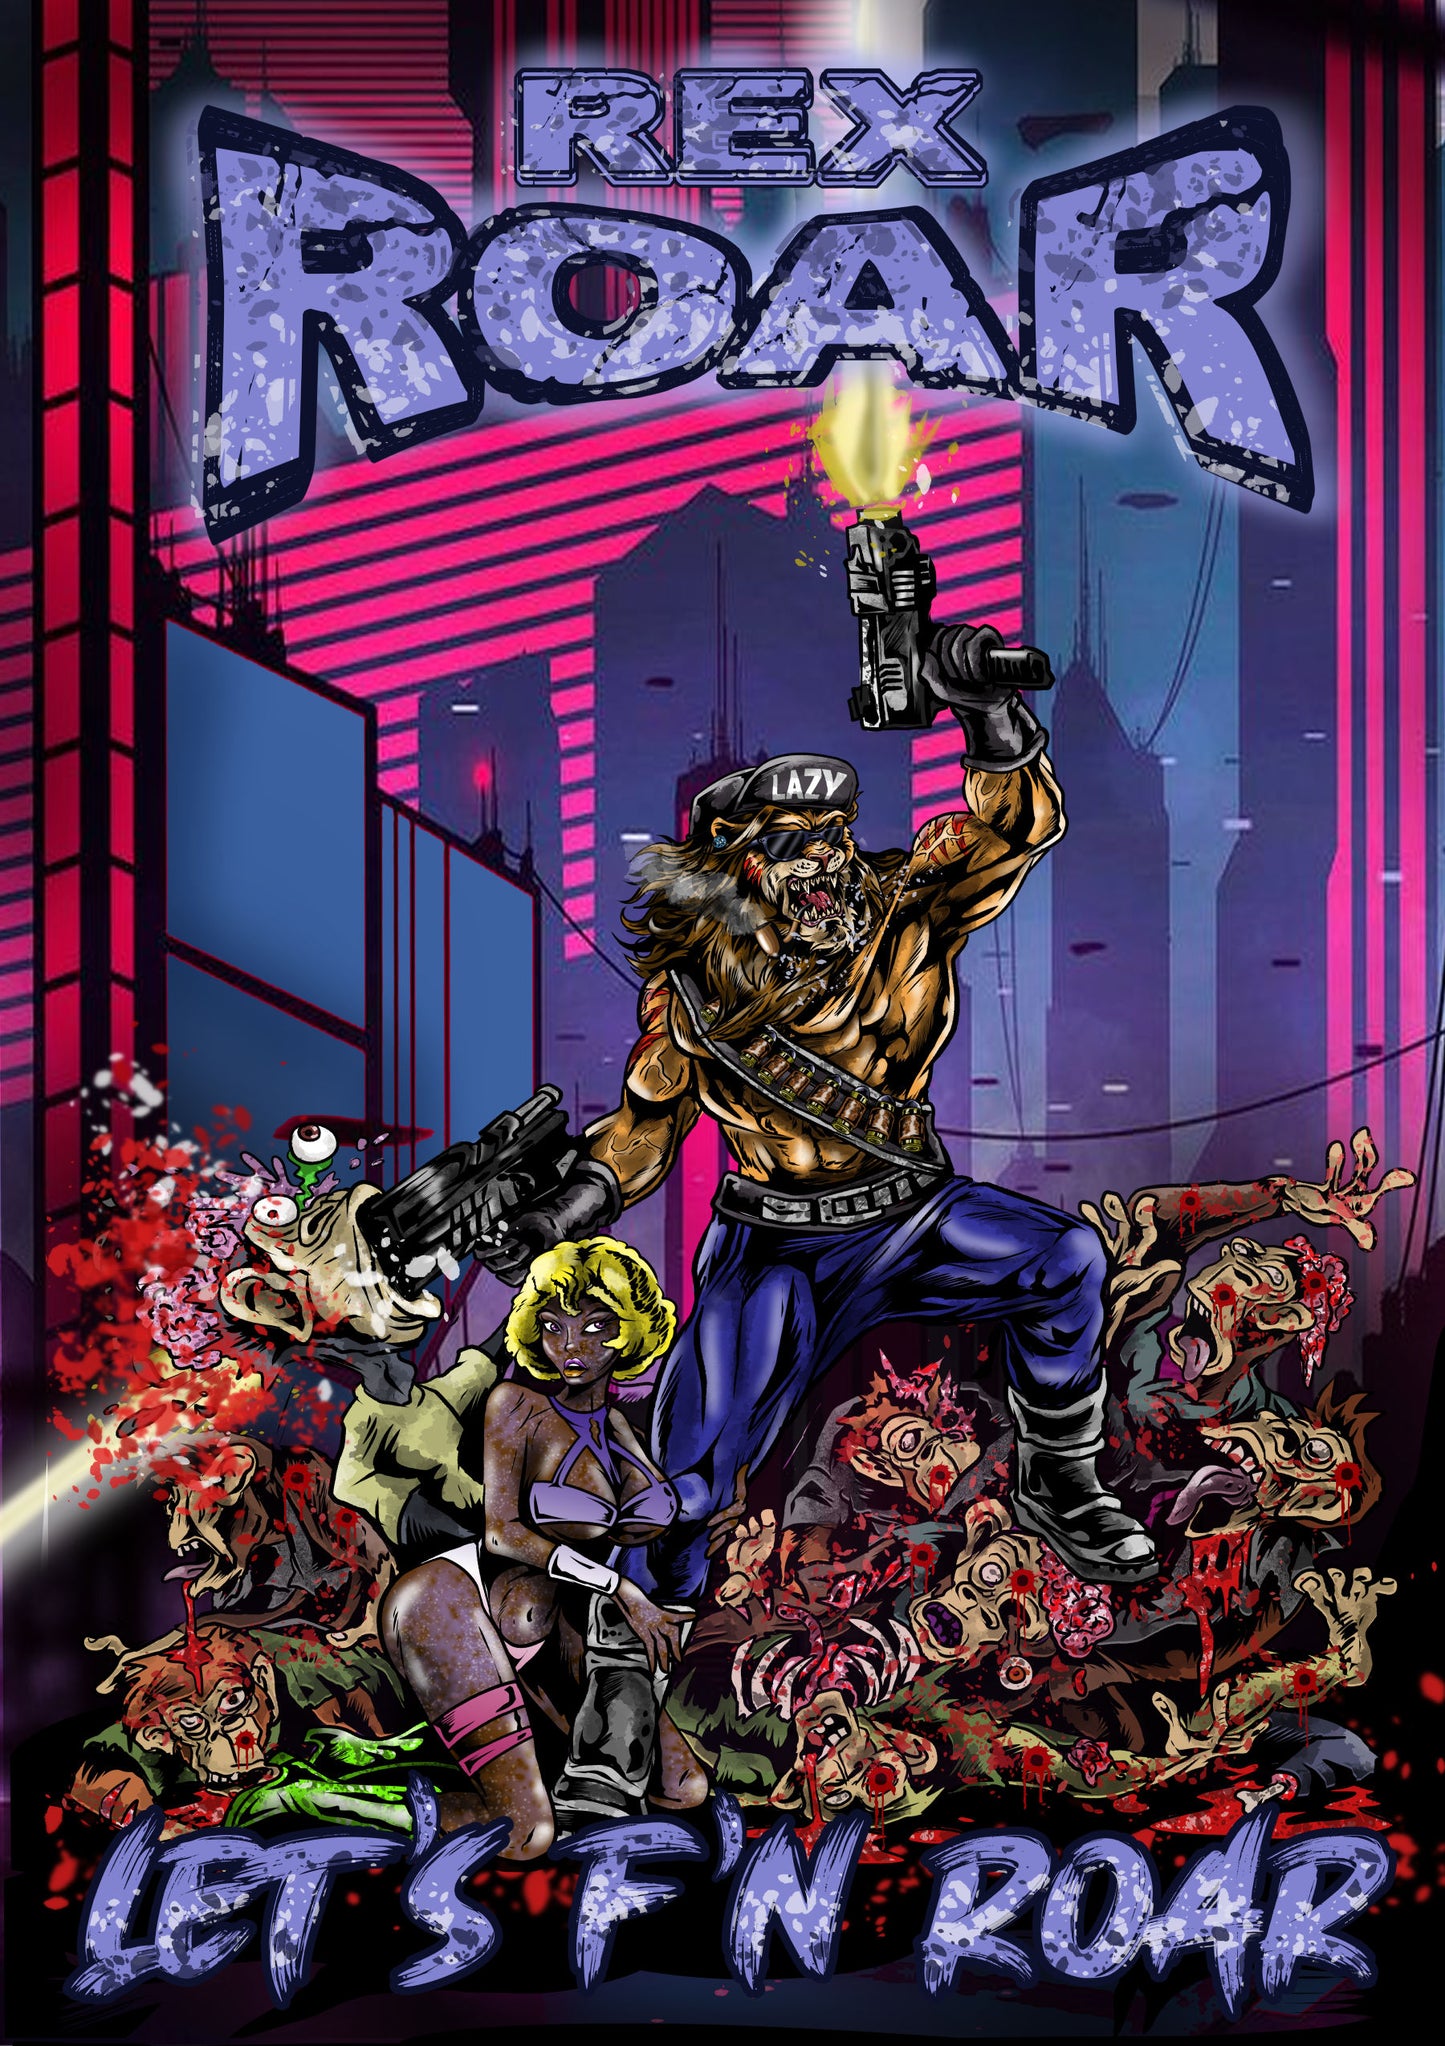 Rex Roar - Chapter 1 - Let's F'N Roar